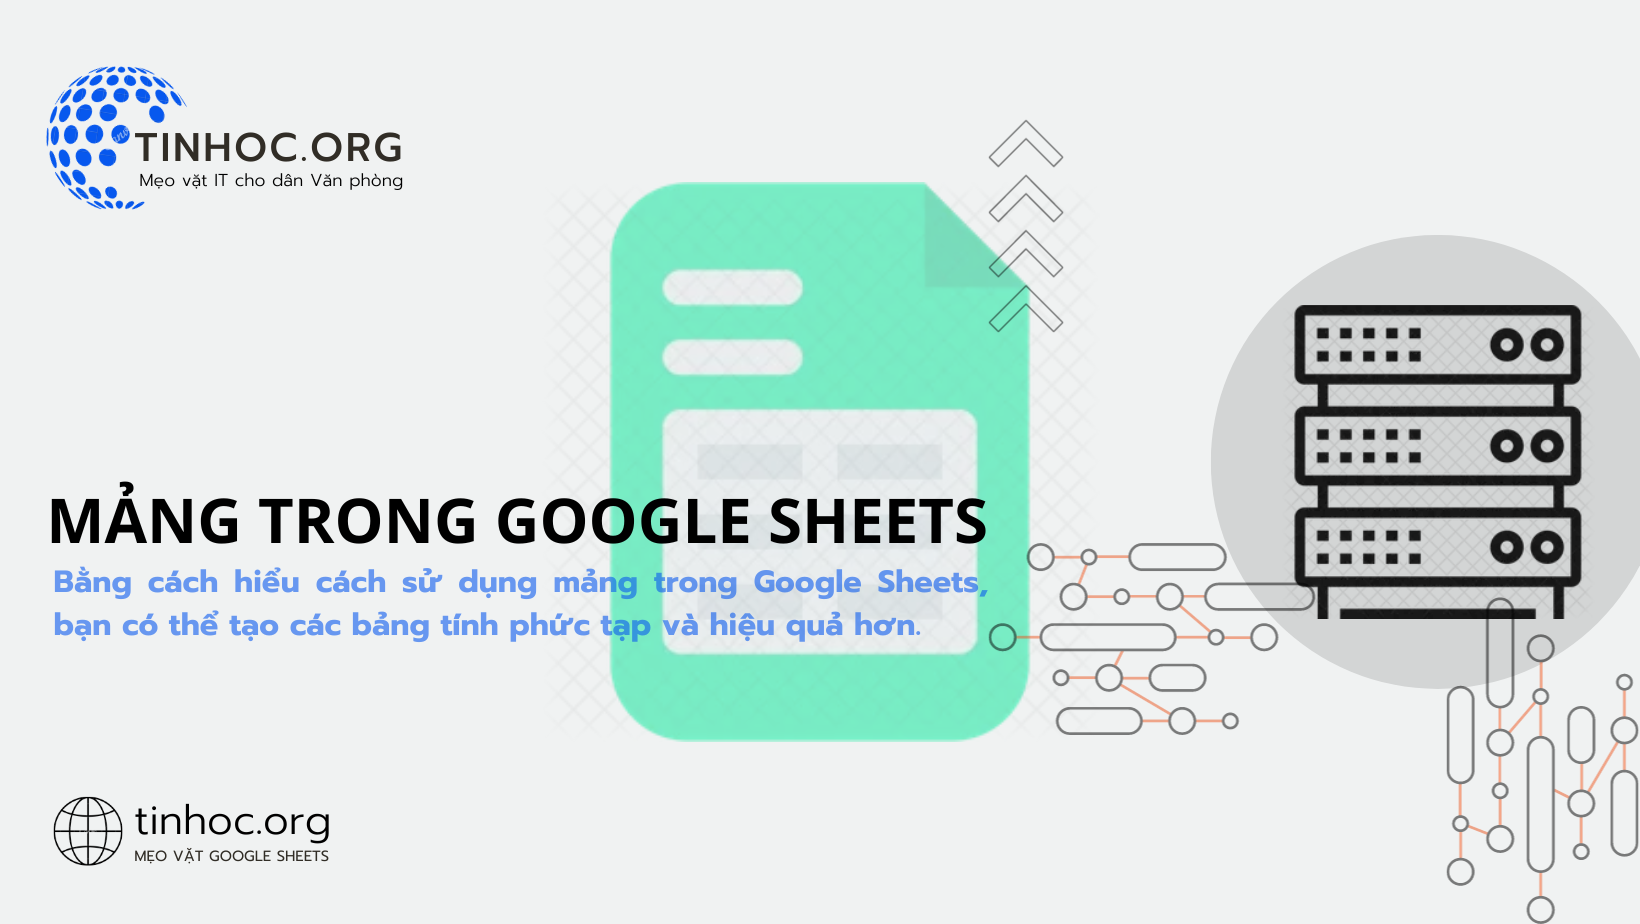 Bằng cách hiểu cách sử dụng mảng trong Google Sheets, bạn có thể tạo các bảng tính phức tạp và hiệu quả hơn.